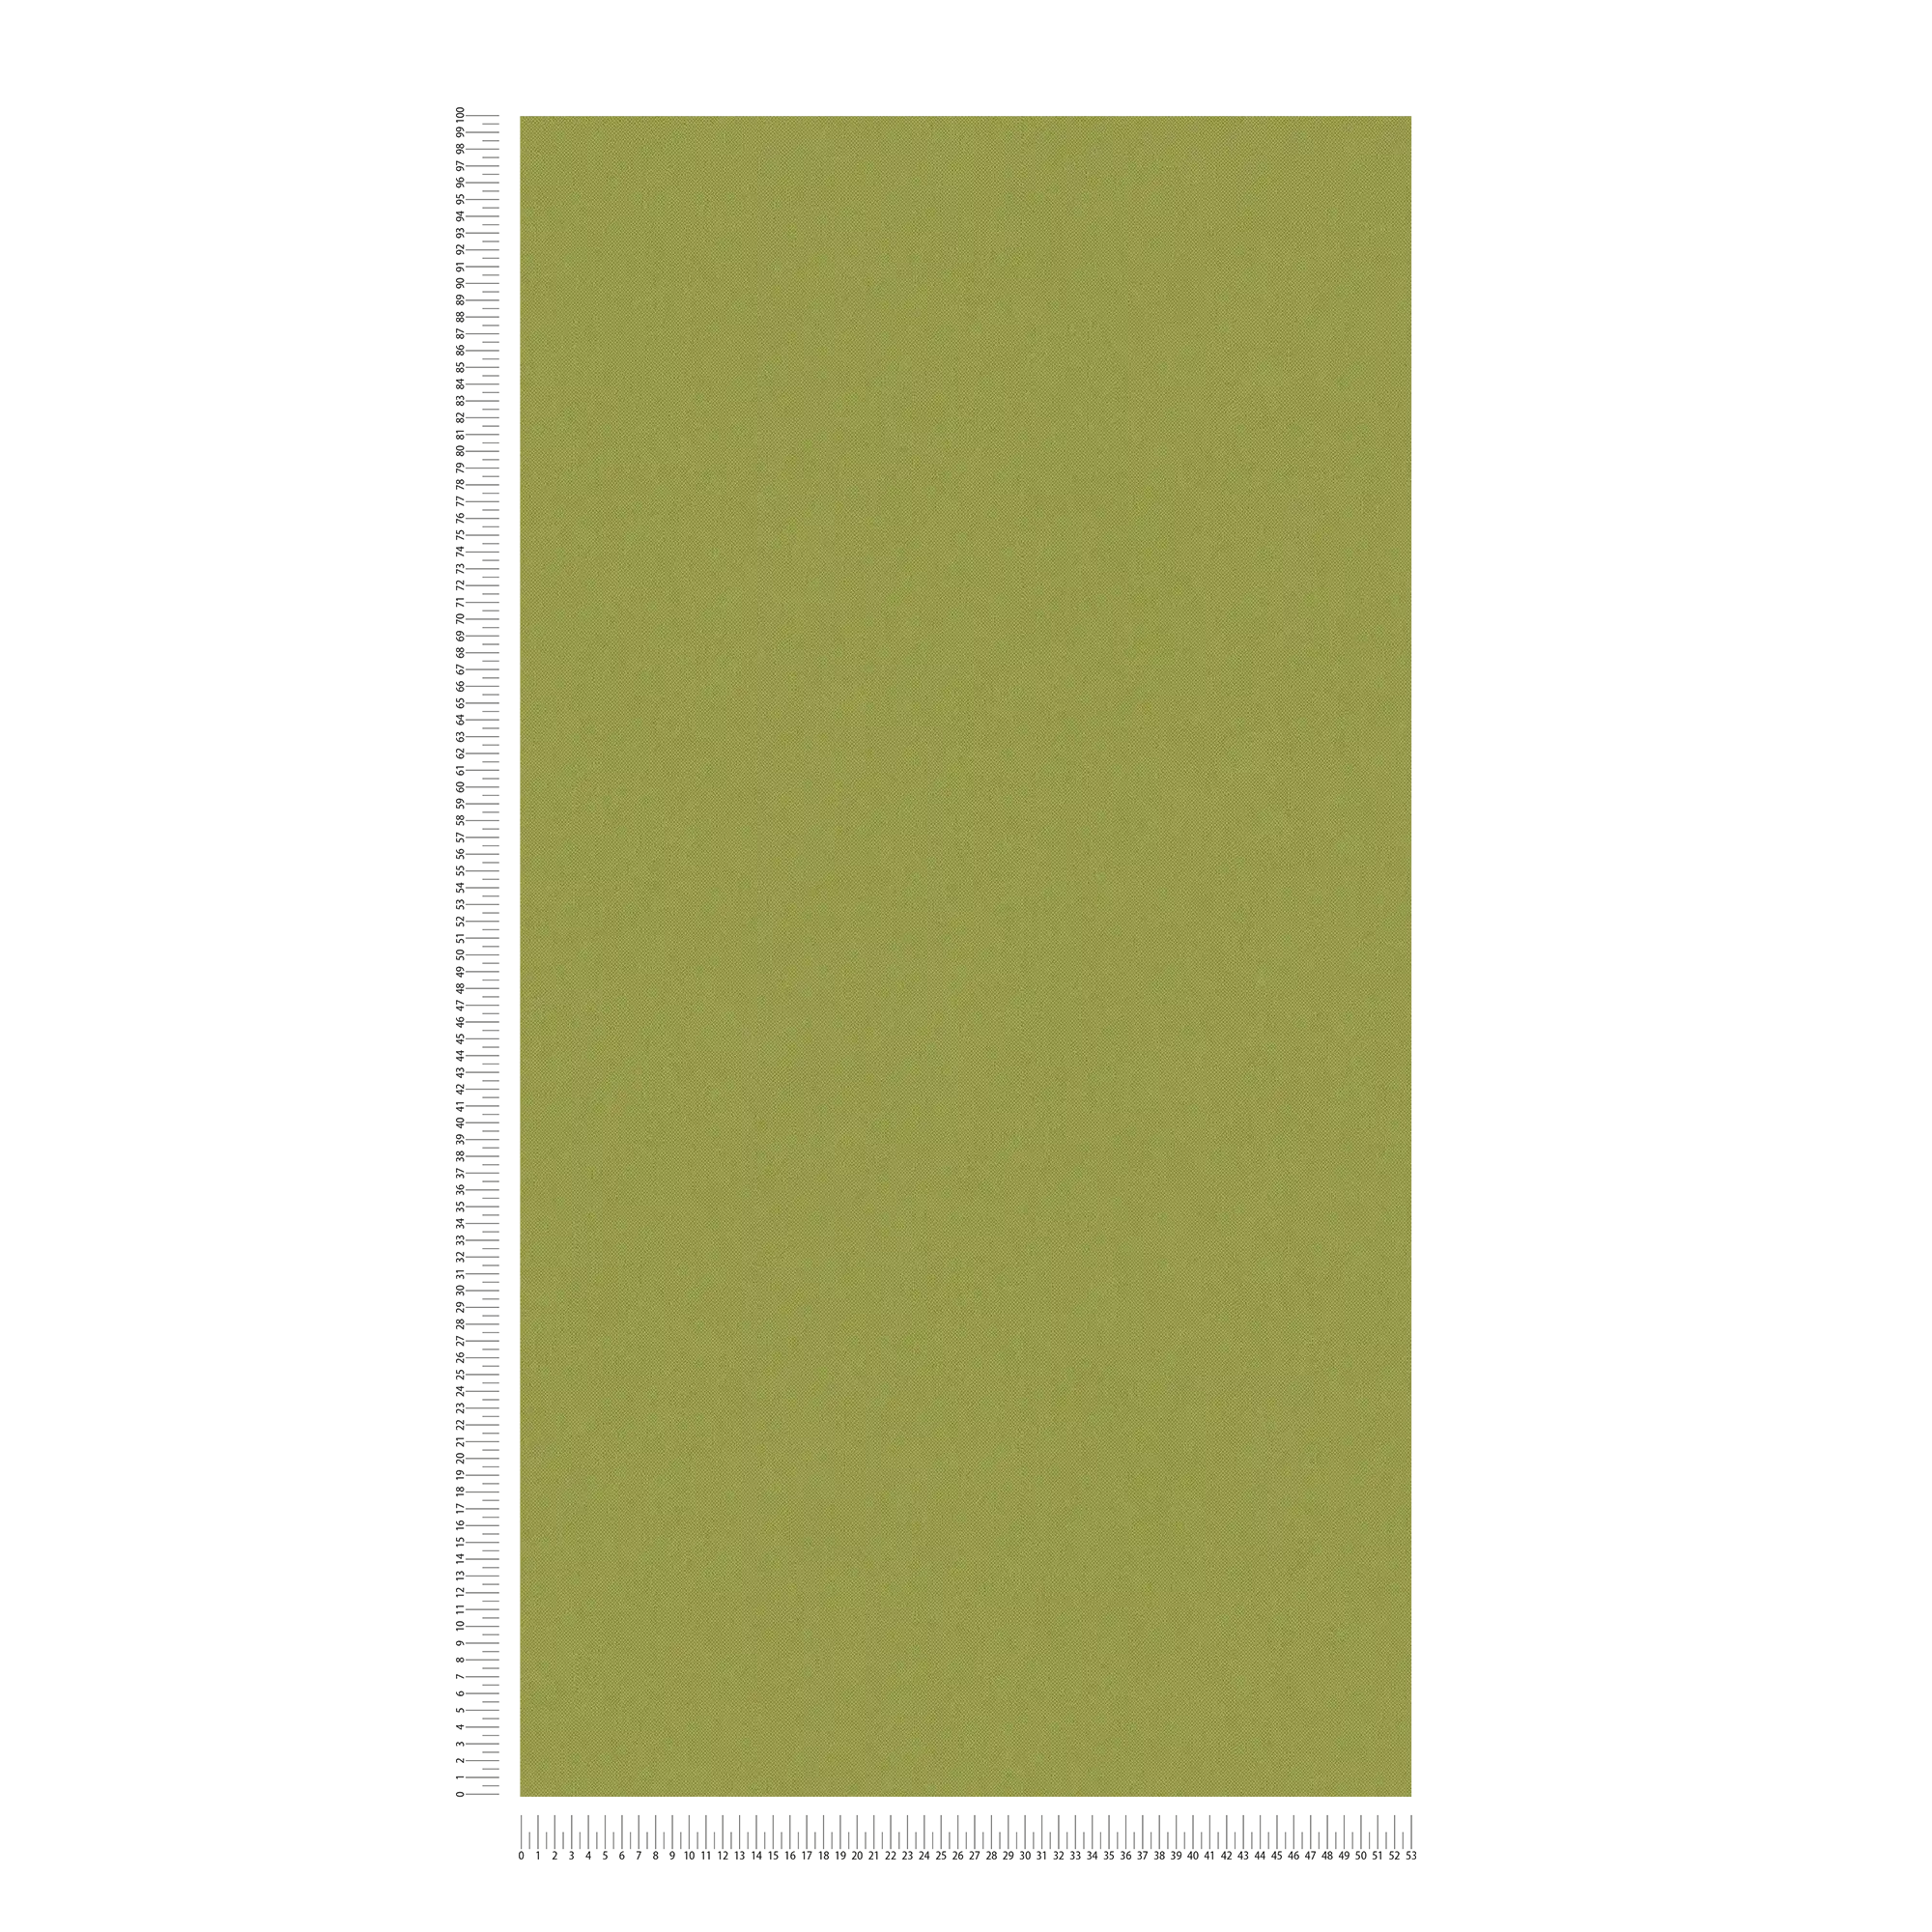             Papel pintado de color verde oliva con aspecto de lino y textura - verde, amarillo
        